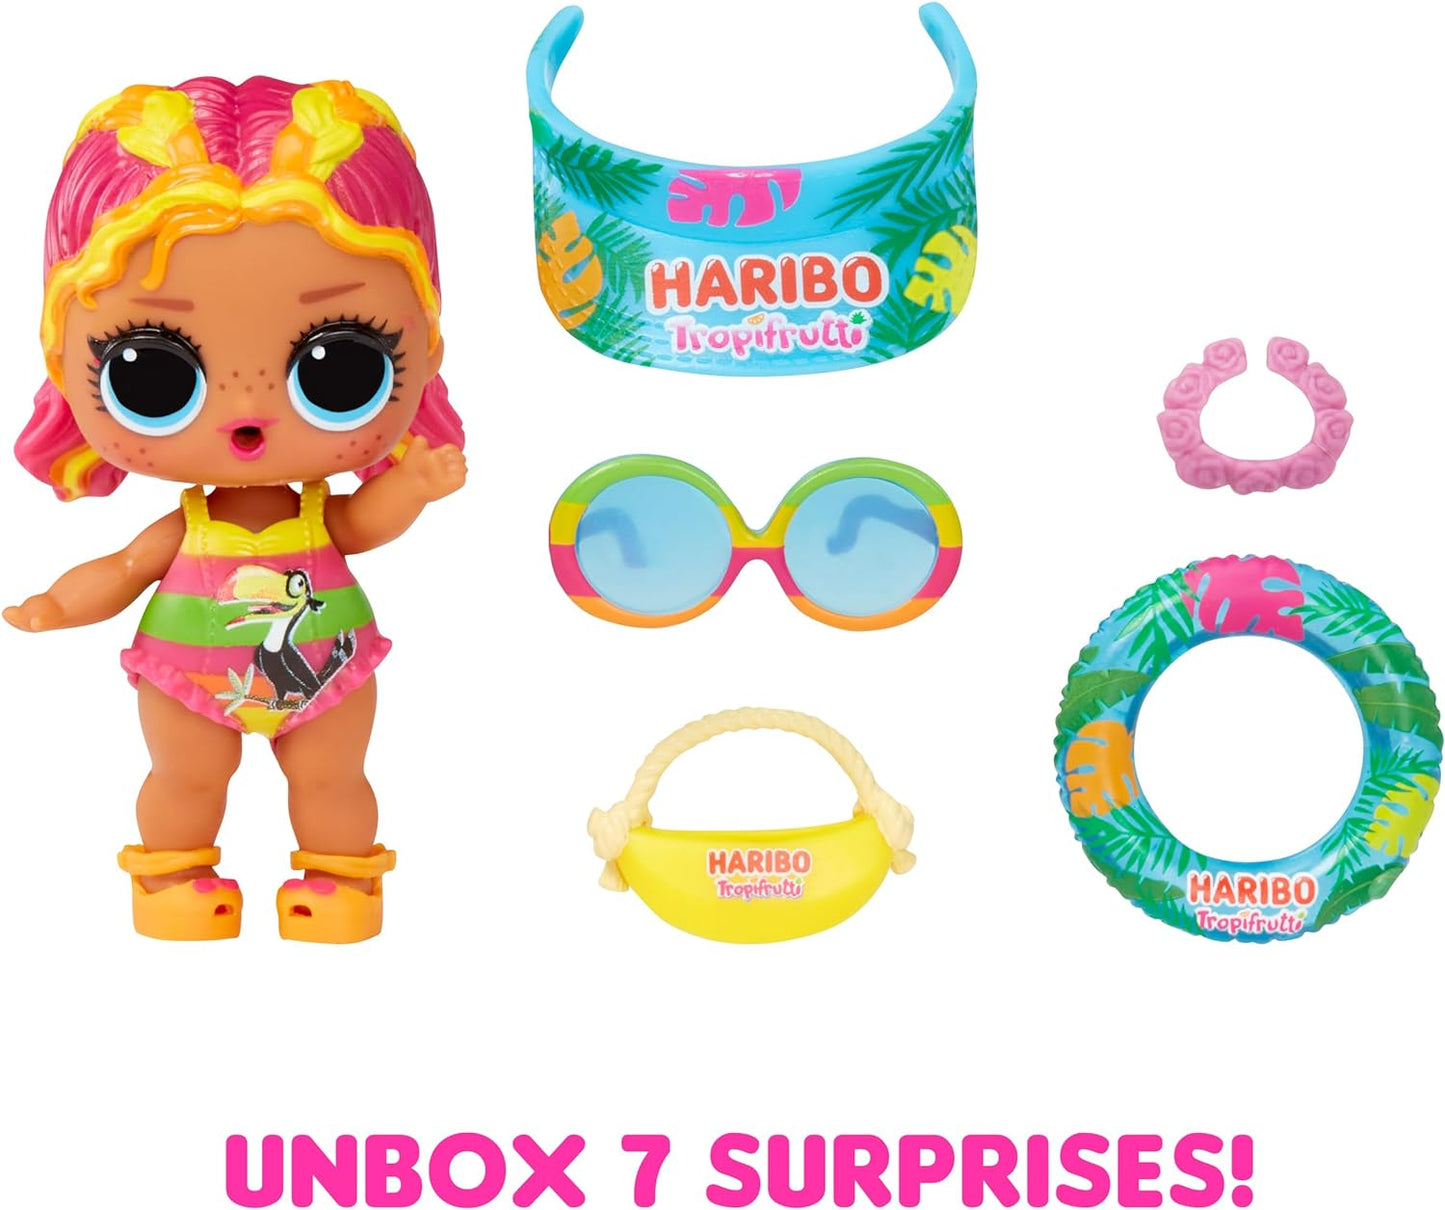 LOL Surprise - Loves Mini Sweets Series X Haribo - Inclui 1 boneca com tema de doces e acessórios divertidos - Bonecas colecionáveis adequadas para crianças a partir de 4 anos